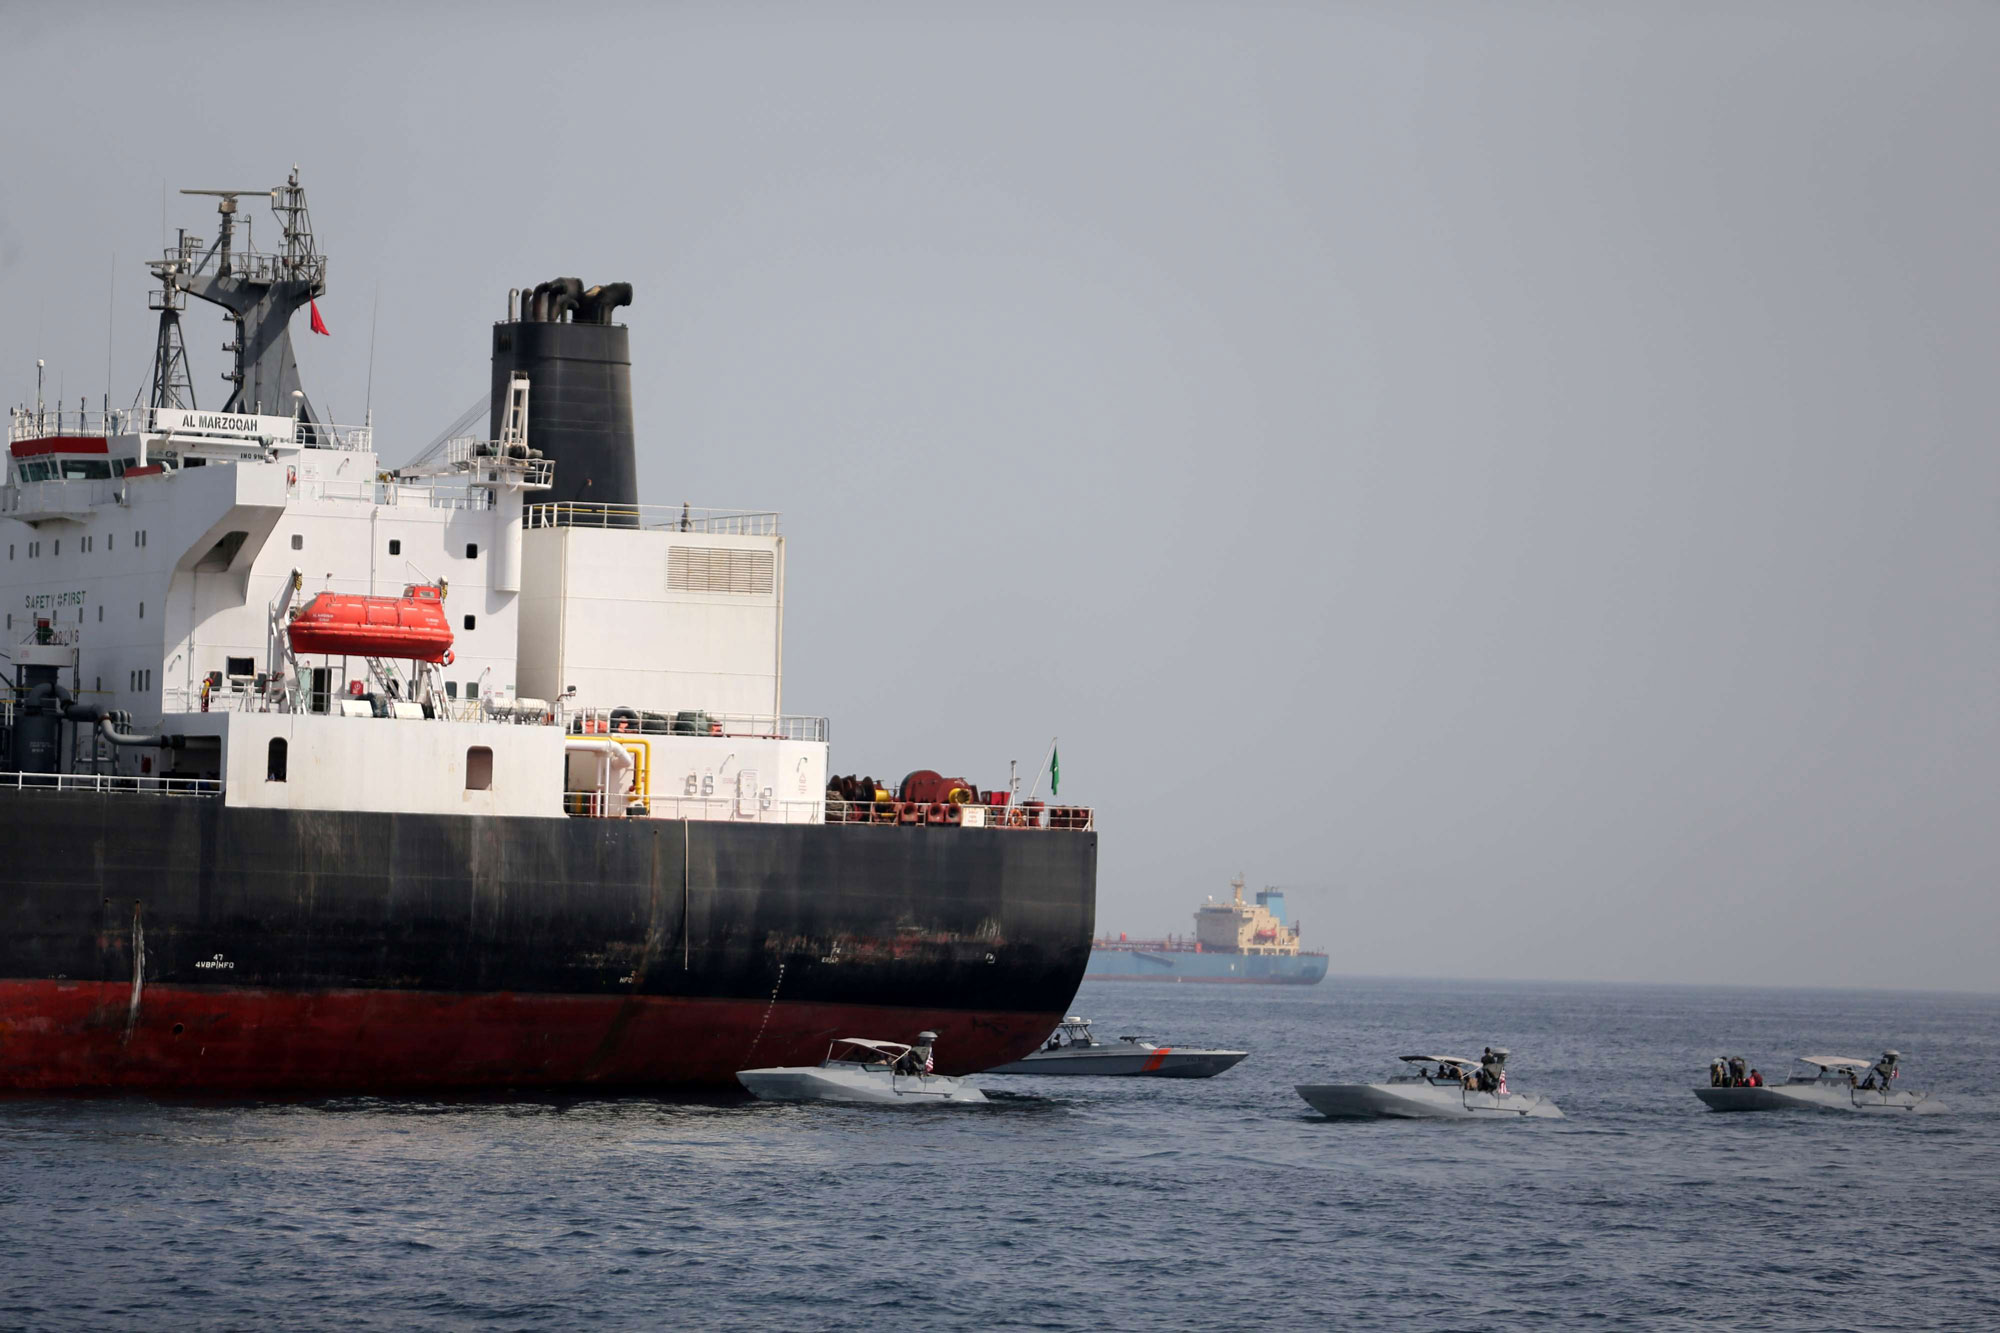 تخريب ناقلات نفط قبالة ميناء الفجيرة تصعيد خطير يهدد الملاحة البحرية